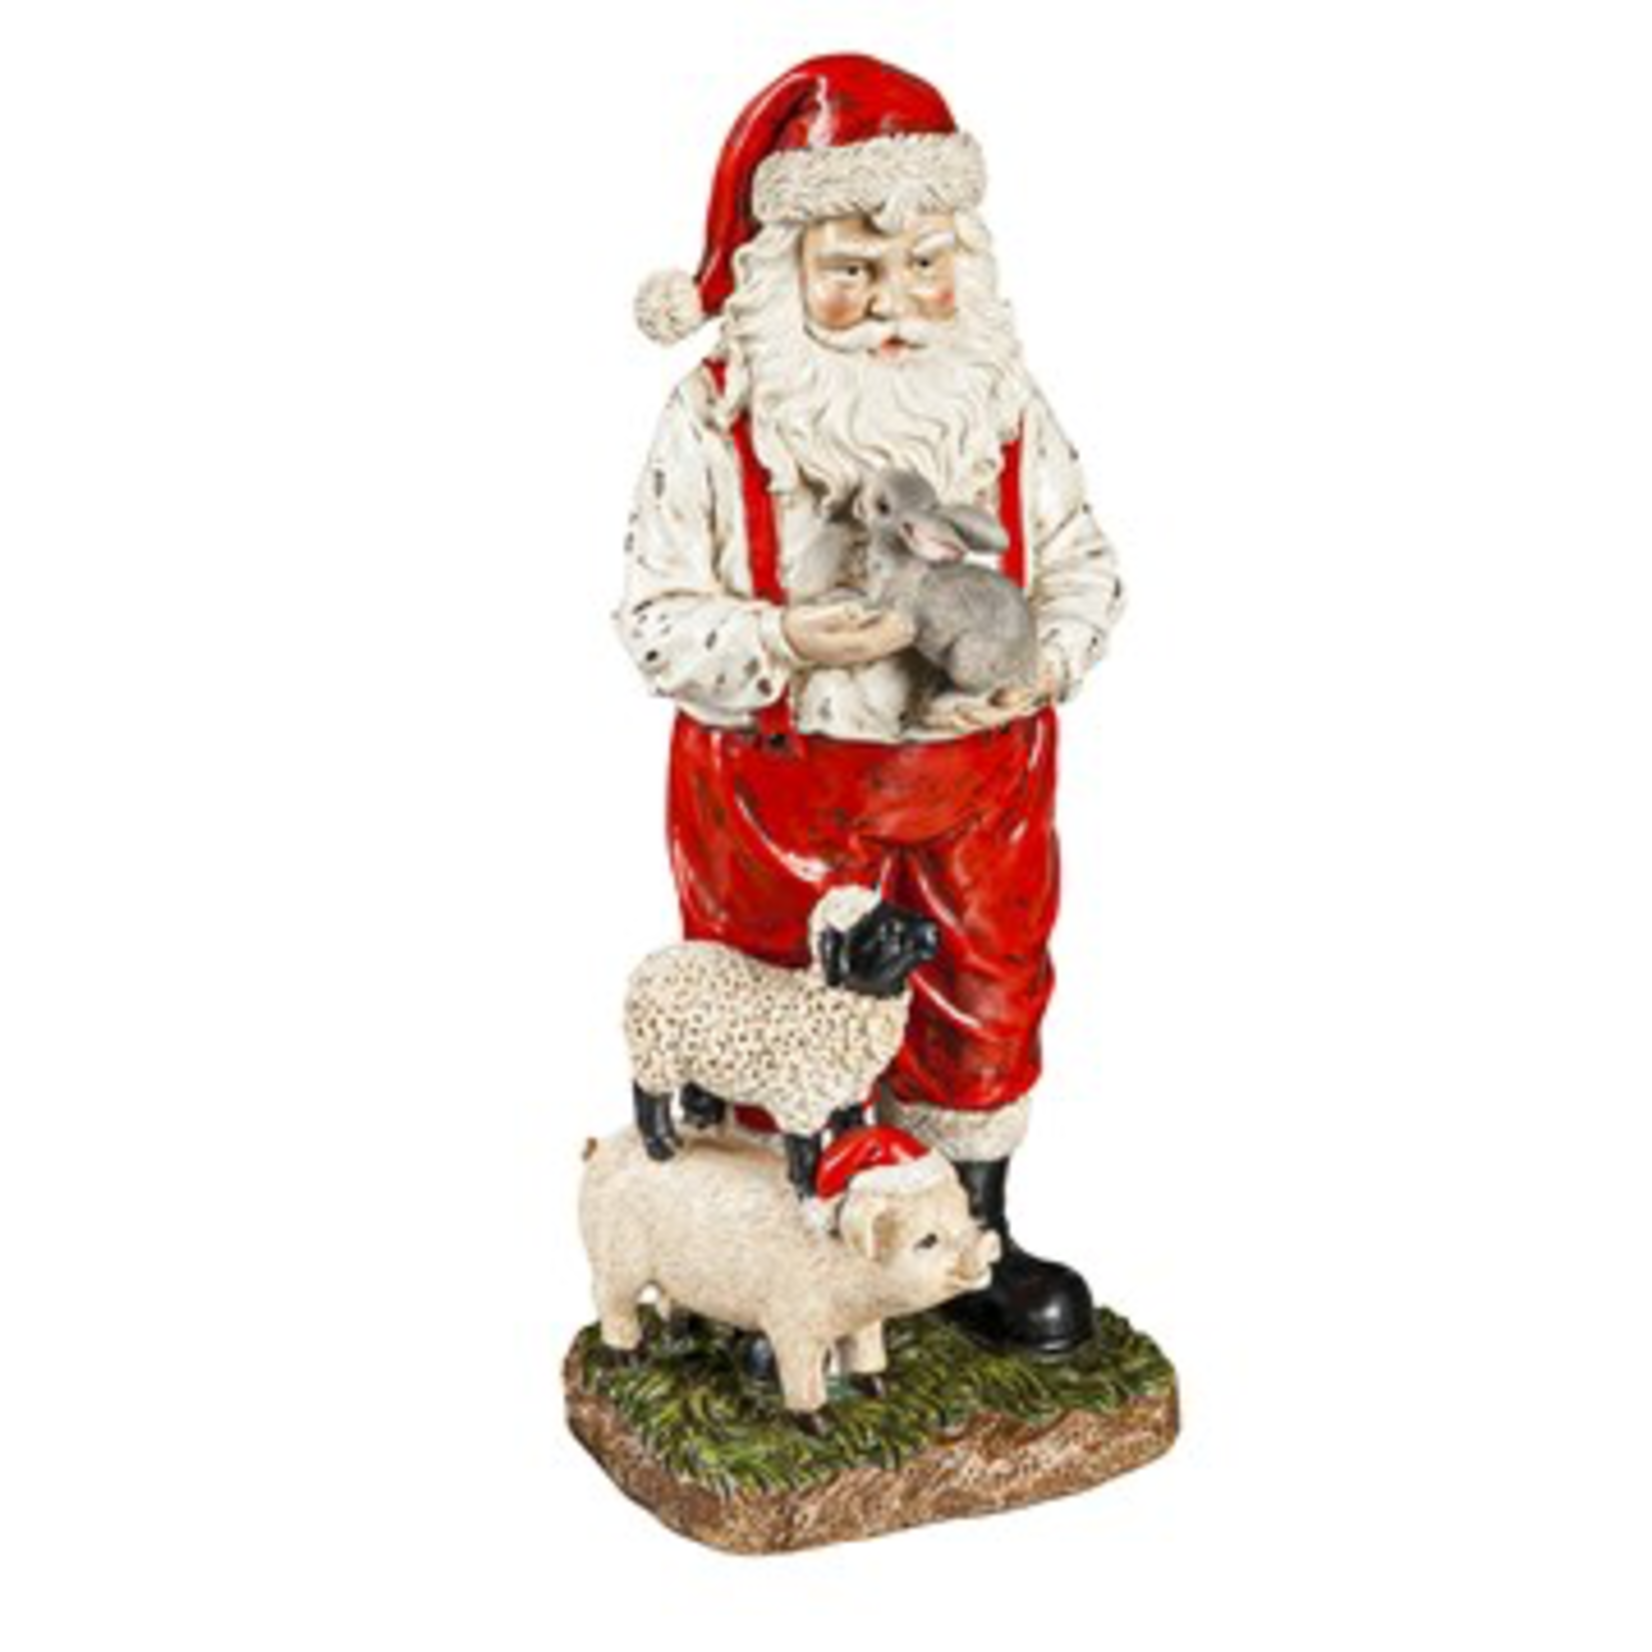 Evergreen Farmhouse Santa Figurine